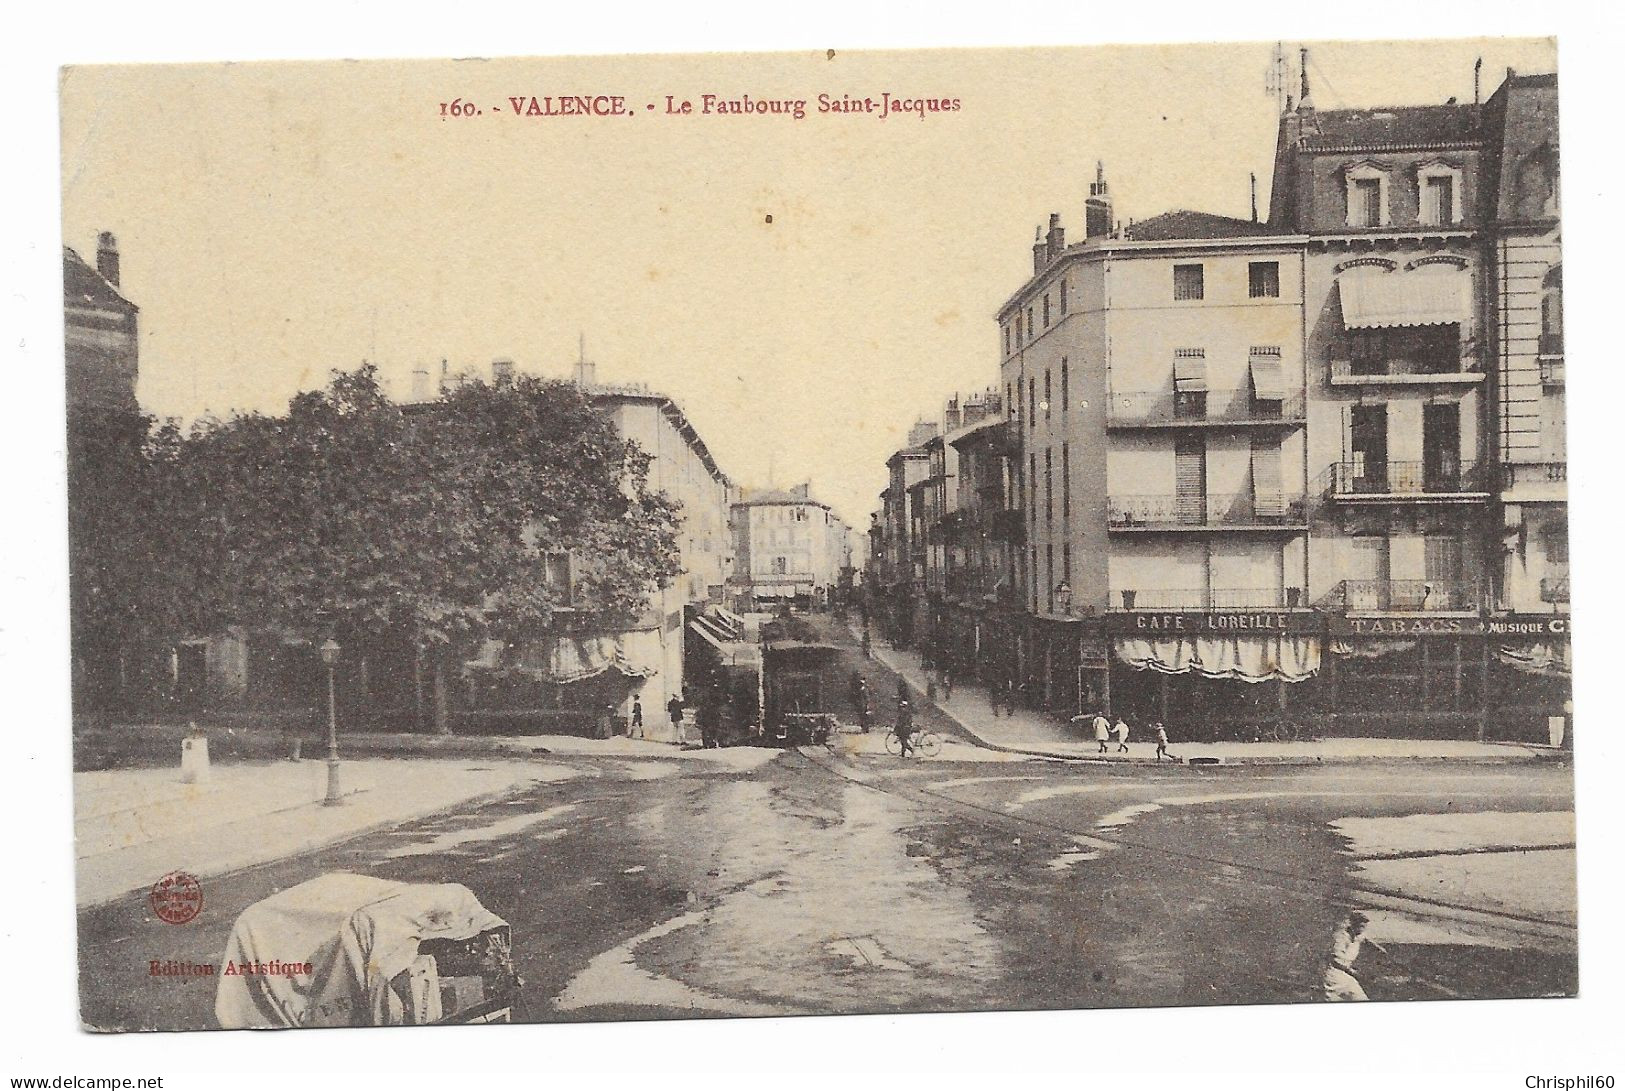 CPA RARE Circulée En F.M - VALENCE - Le Faubourg Saint-Jacques - Edition Artistique - N° 160 - - Valence